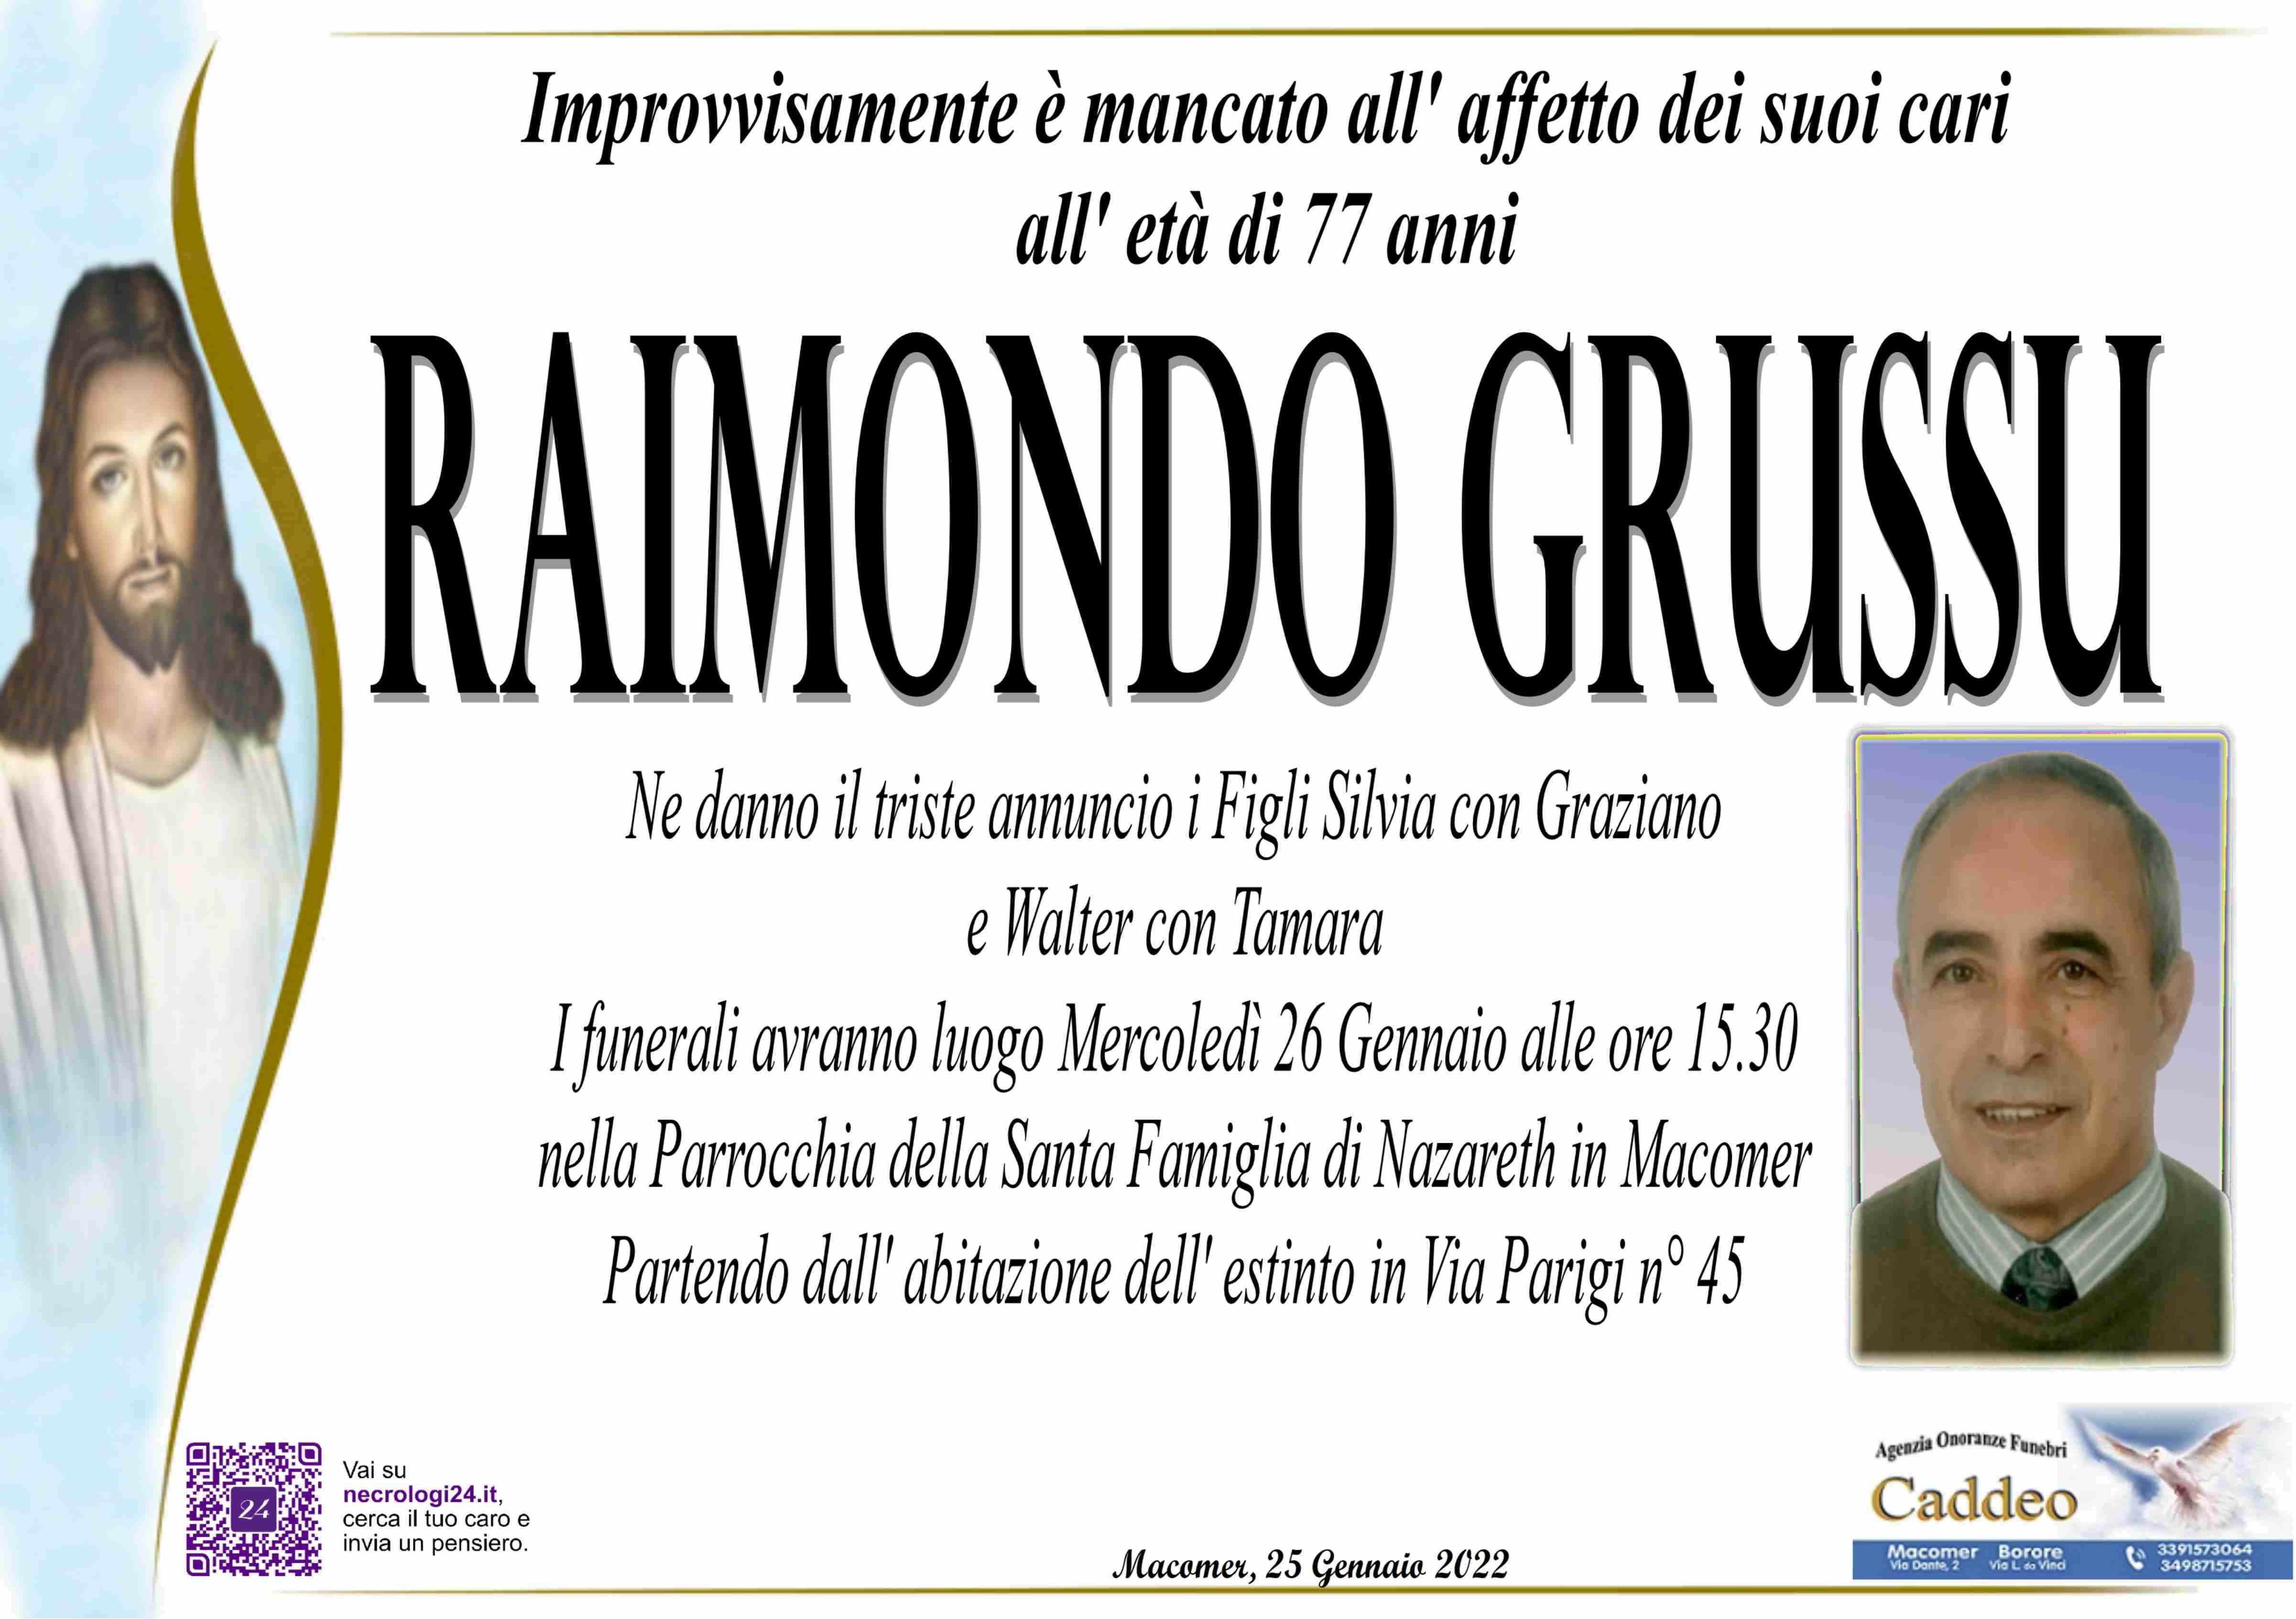 Raimondo Grussu